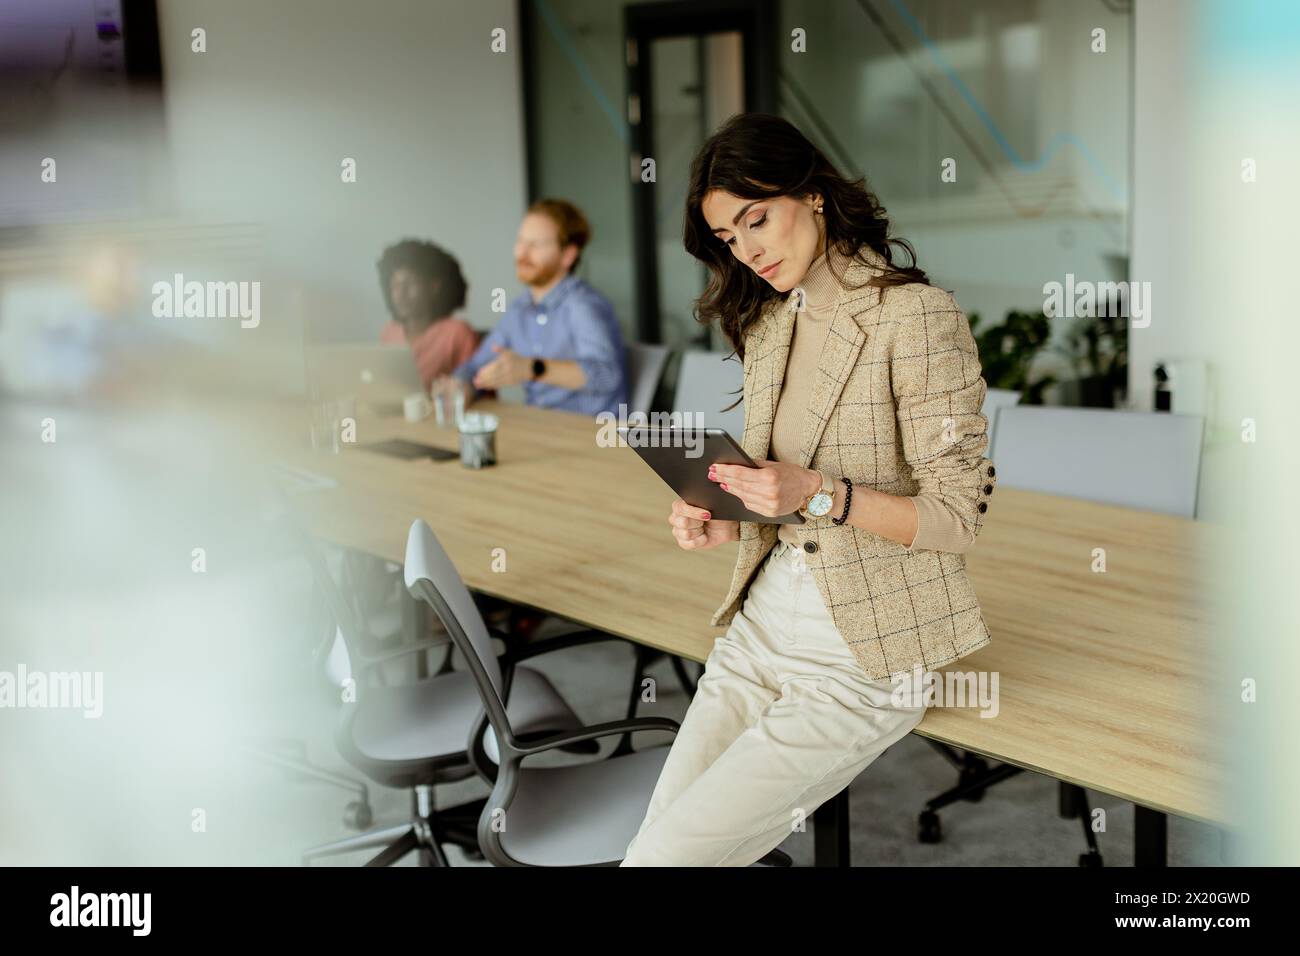 Eine kompetente Frau mit Tablet steht an der Spitze eines gemeinsamen Bürobereichs, ihr Team hat hinter ihr Diskussionen geführt. Stockfoto